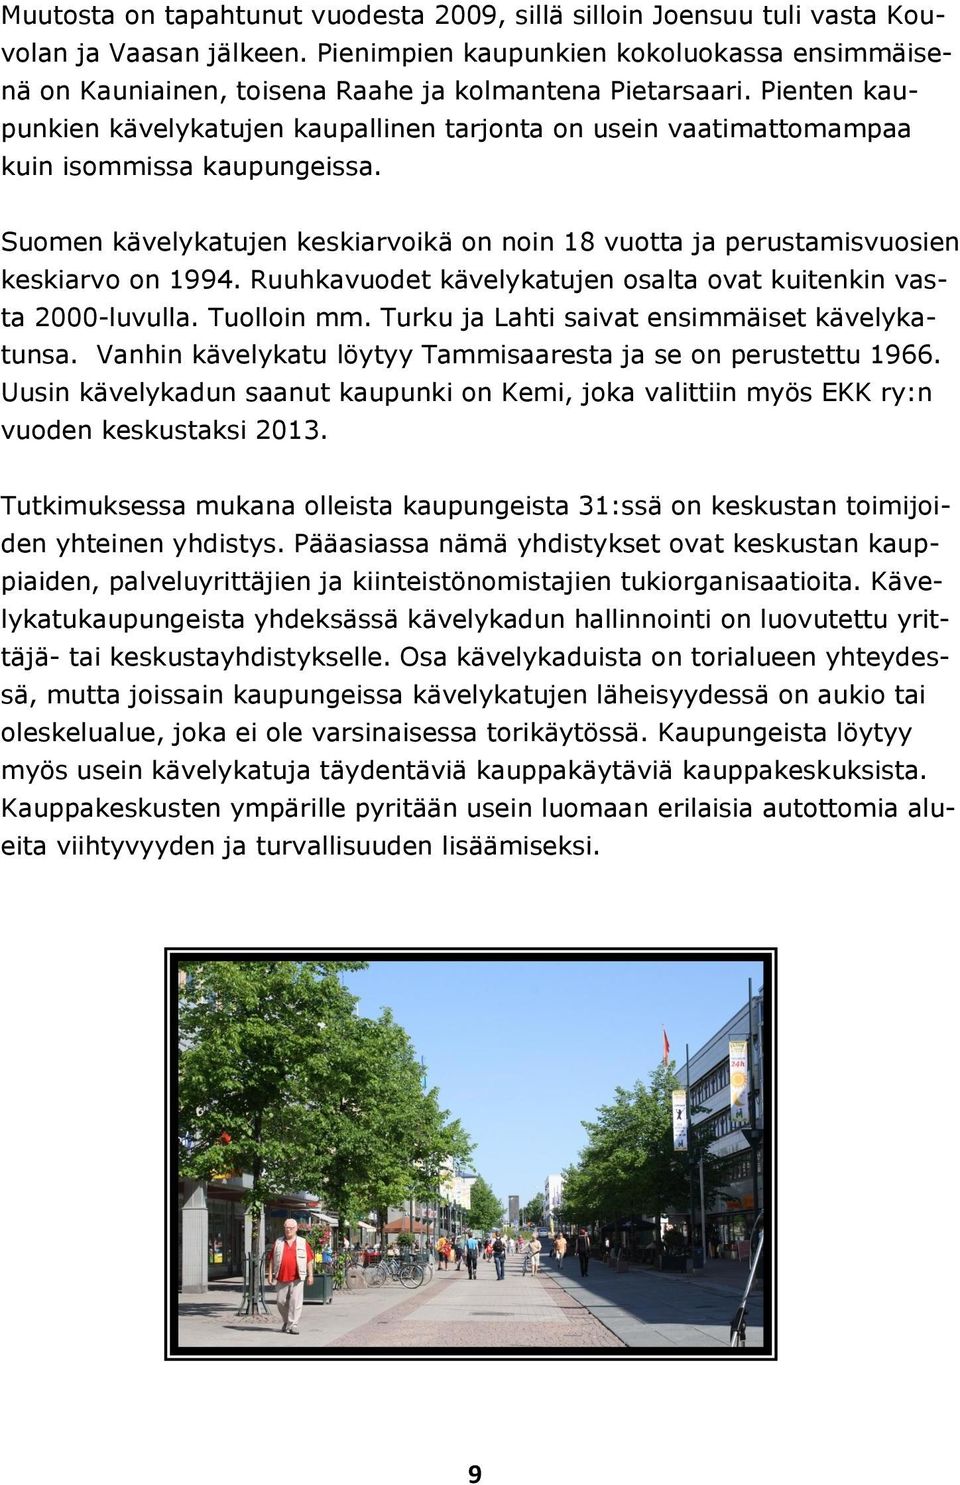 Pienten kaupunkien kävelykatujen kaupallinen tarjonta on usein vaatimattomampaa kuin isommissa kaupungeissa. Suomen kävelykatujen keskiarvoikä on noin 18 vuotta ja perustamisvuosien keskiarvo on 1994.